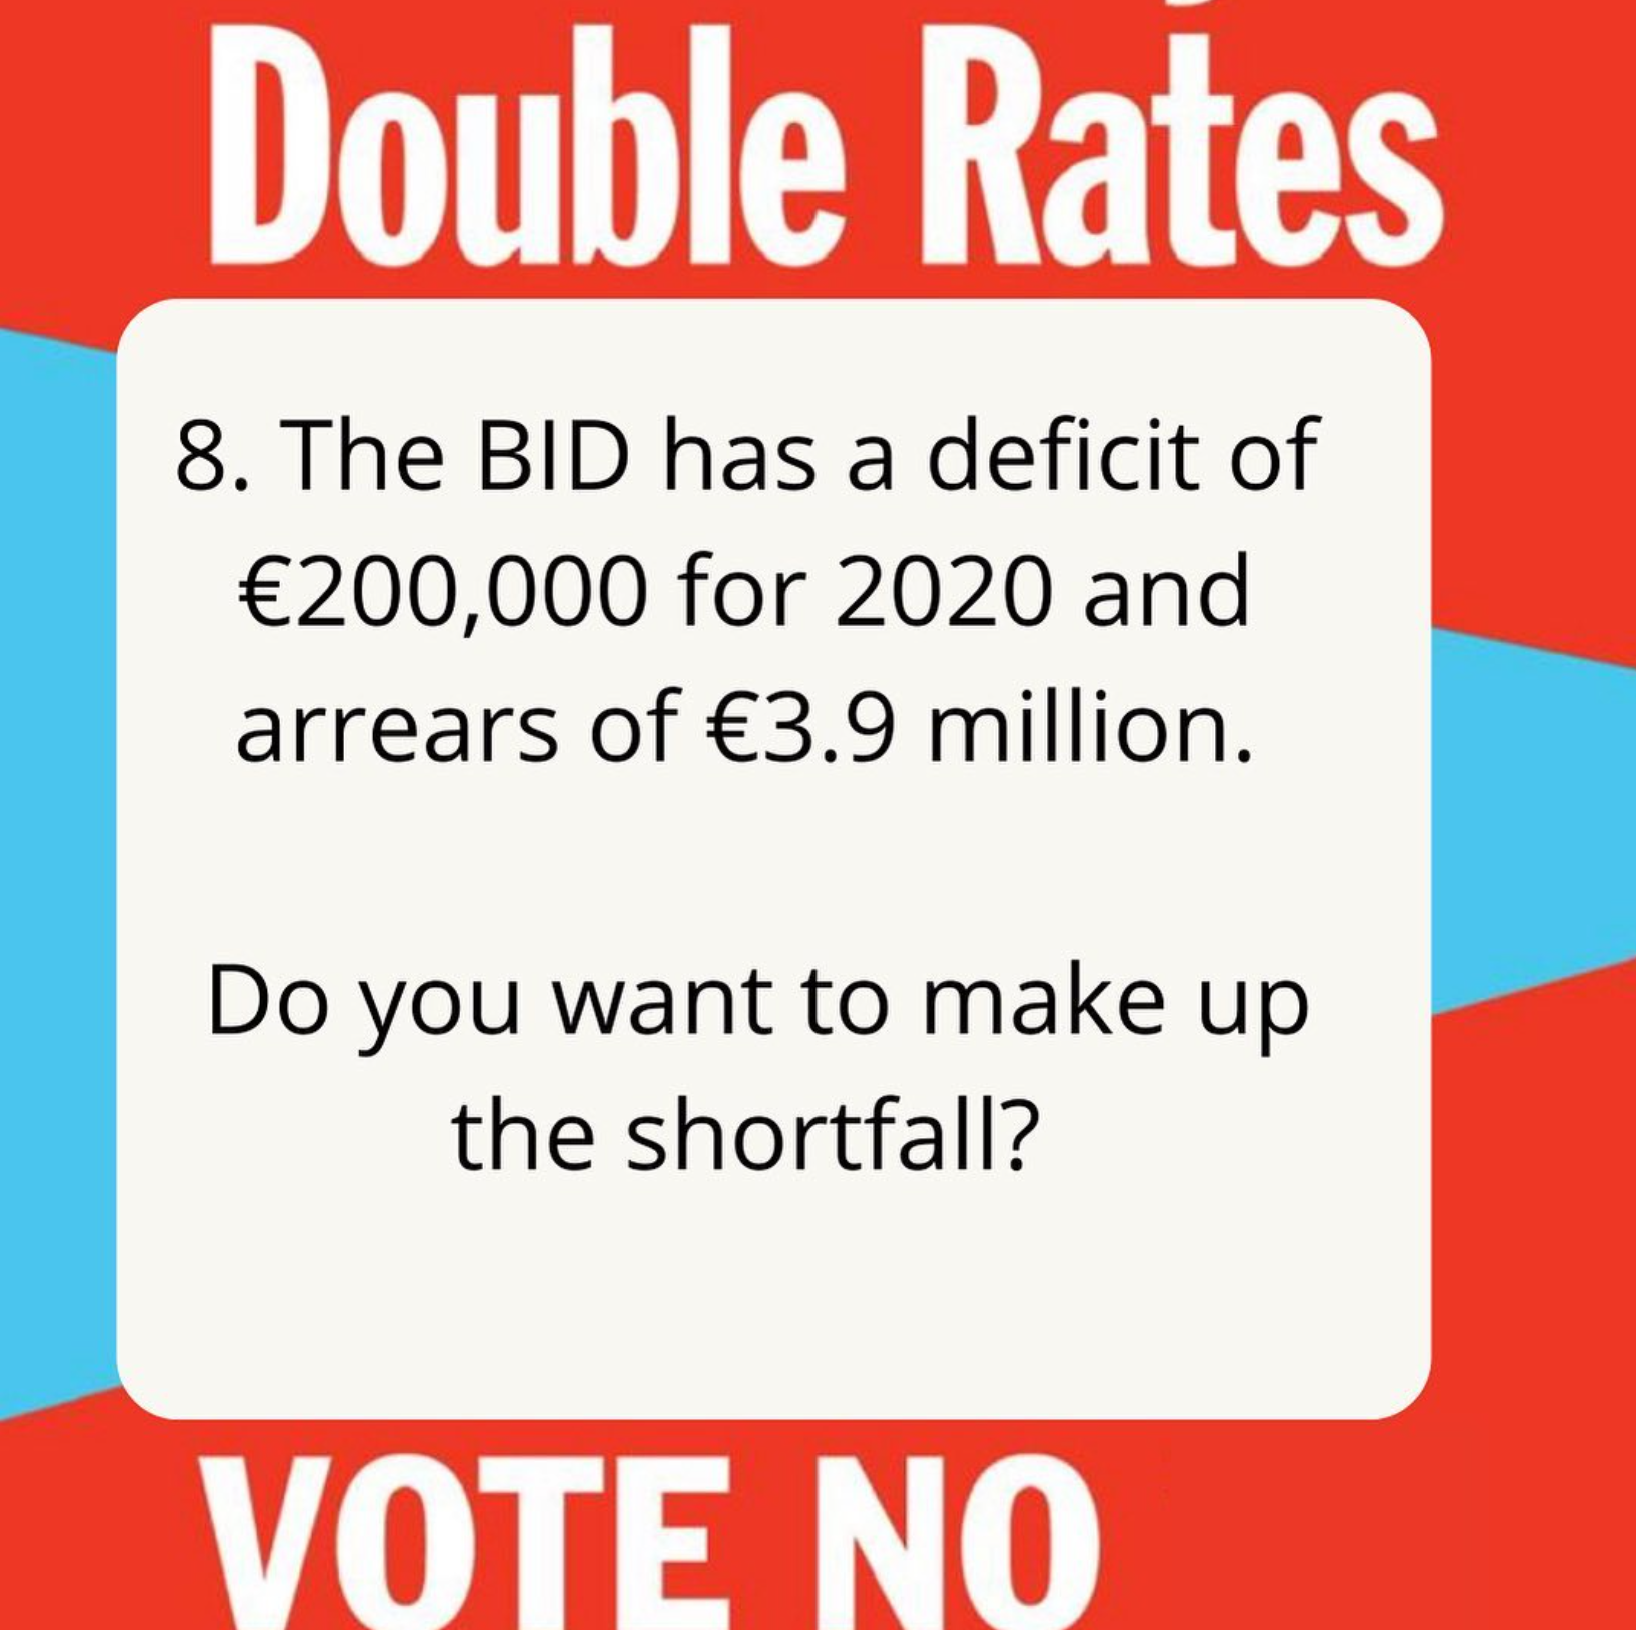 8. deficit vote no to dublin town bid business improvement district.png